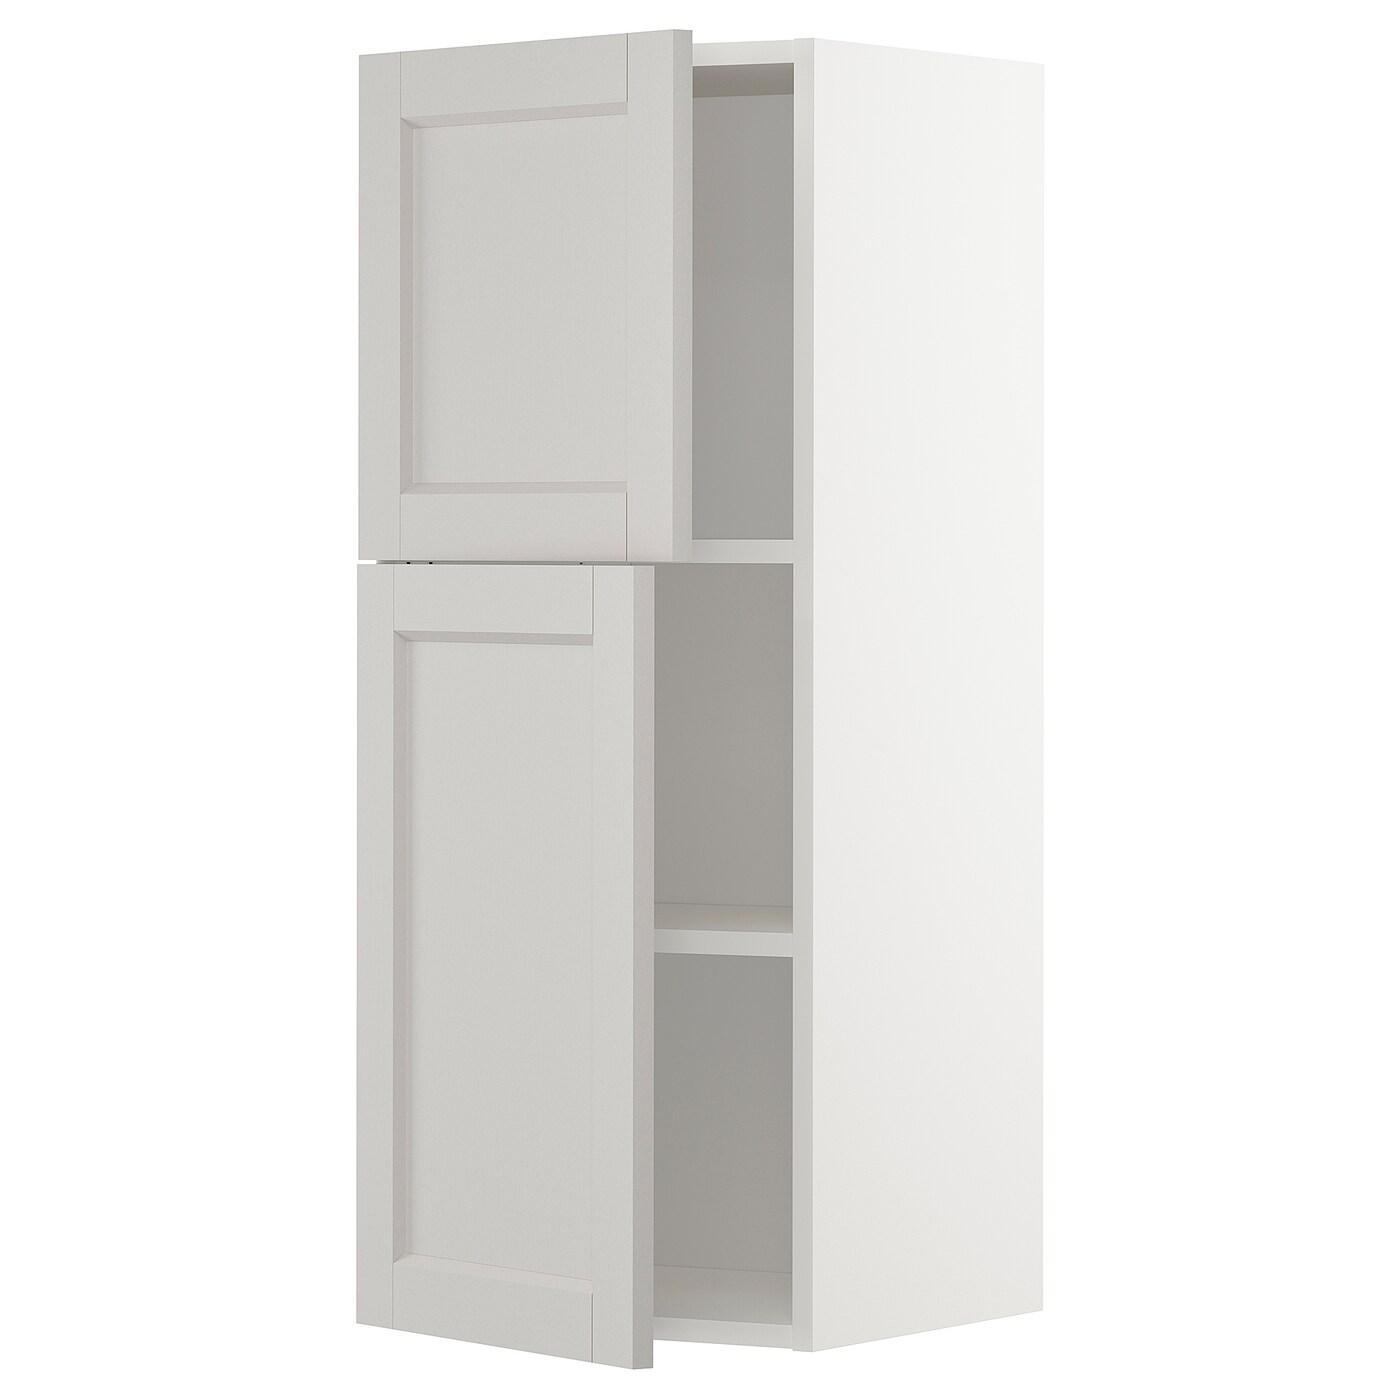 Навесной шкаф с полкой - METOD IKEA/ МЕТОД ИКЕА, 100х40 см, белый/светло-серый